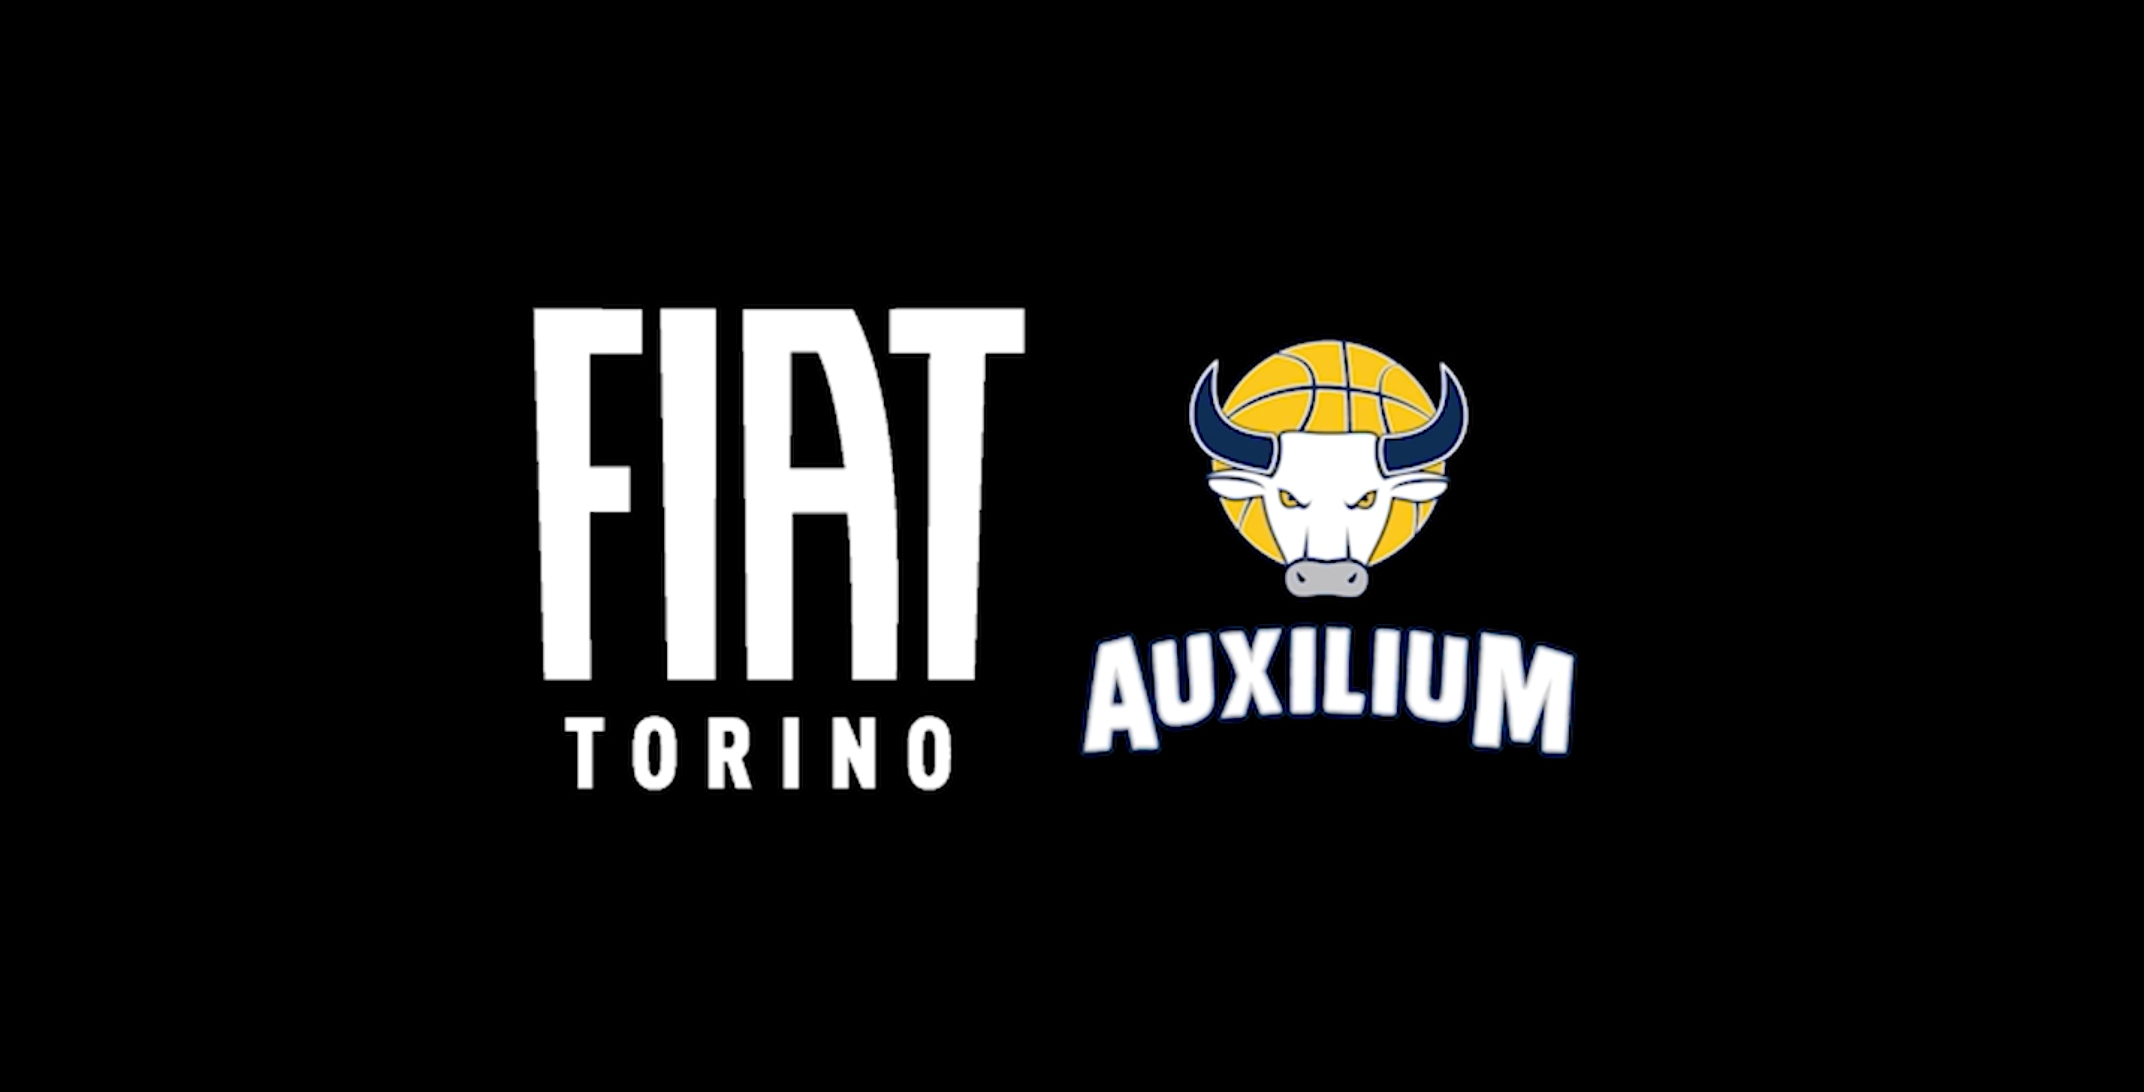 Fiat immortala il “Mannequin Challenge” più grande d’Italia! [VIDEO]